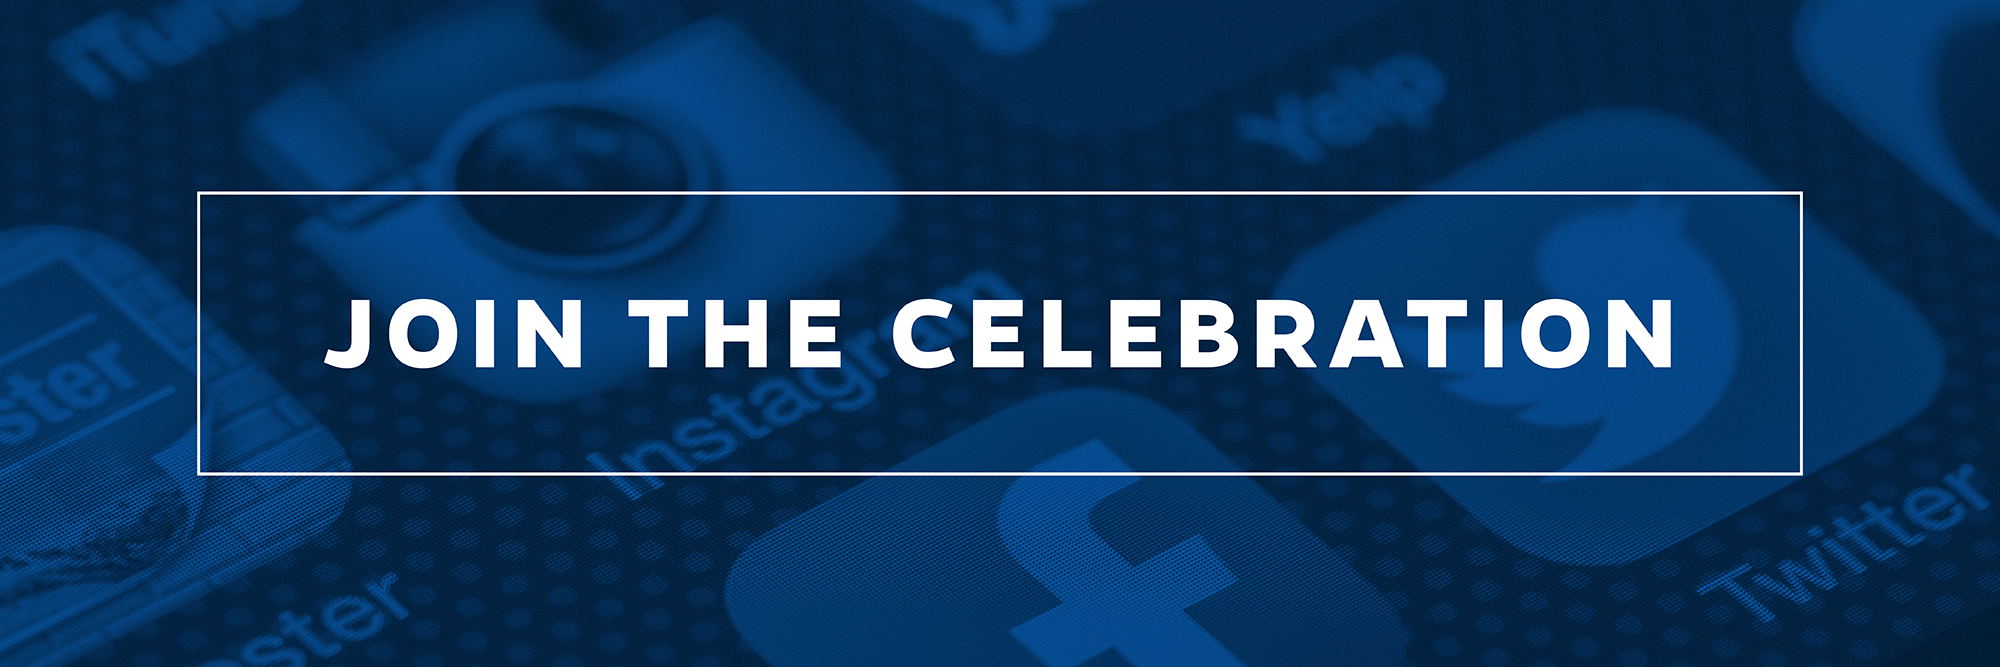 Celebrate Celebrate on Social Media